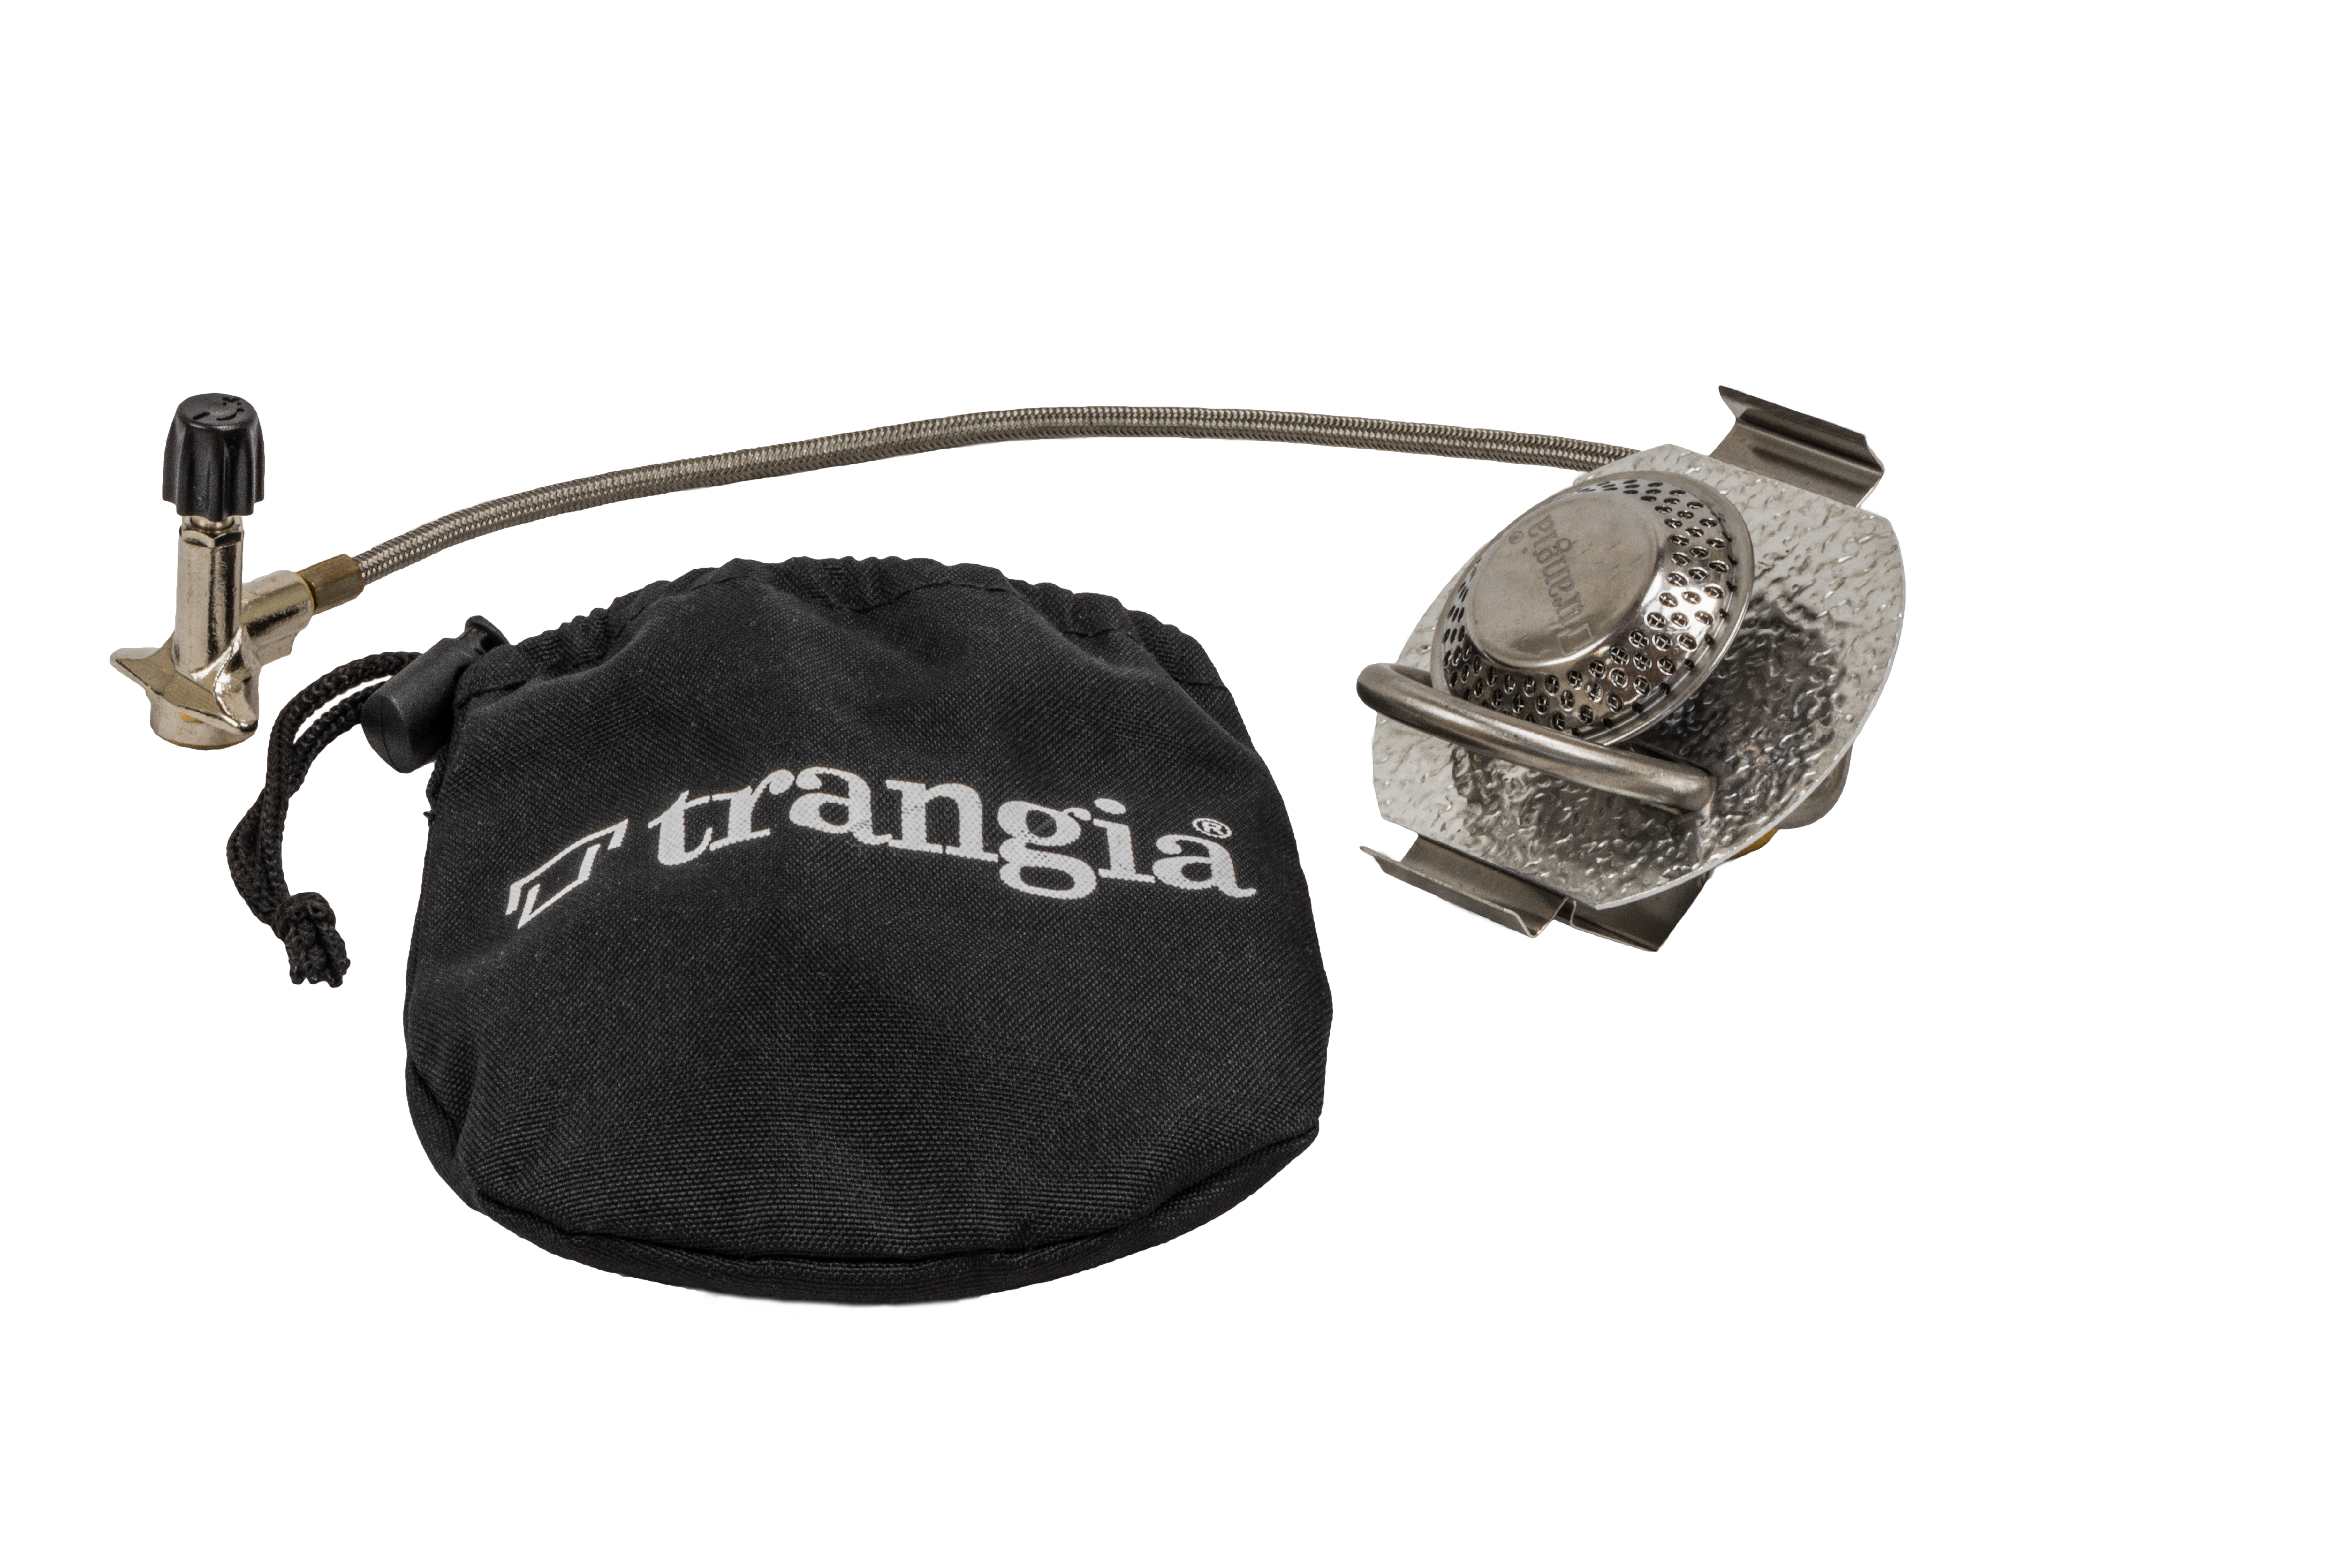 Gasbrenner für Sturmkocher Trangia